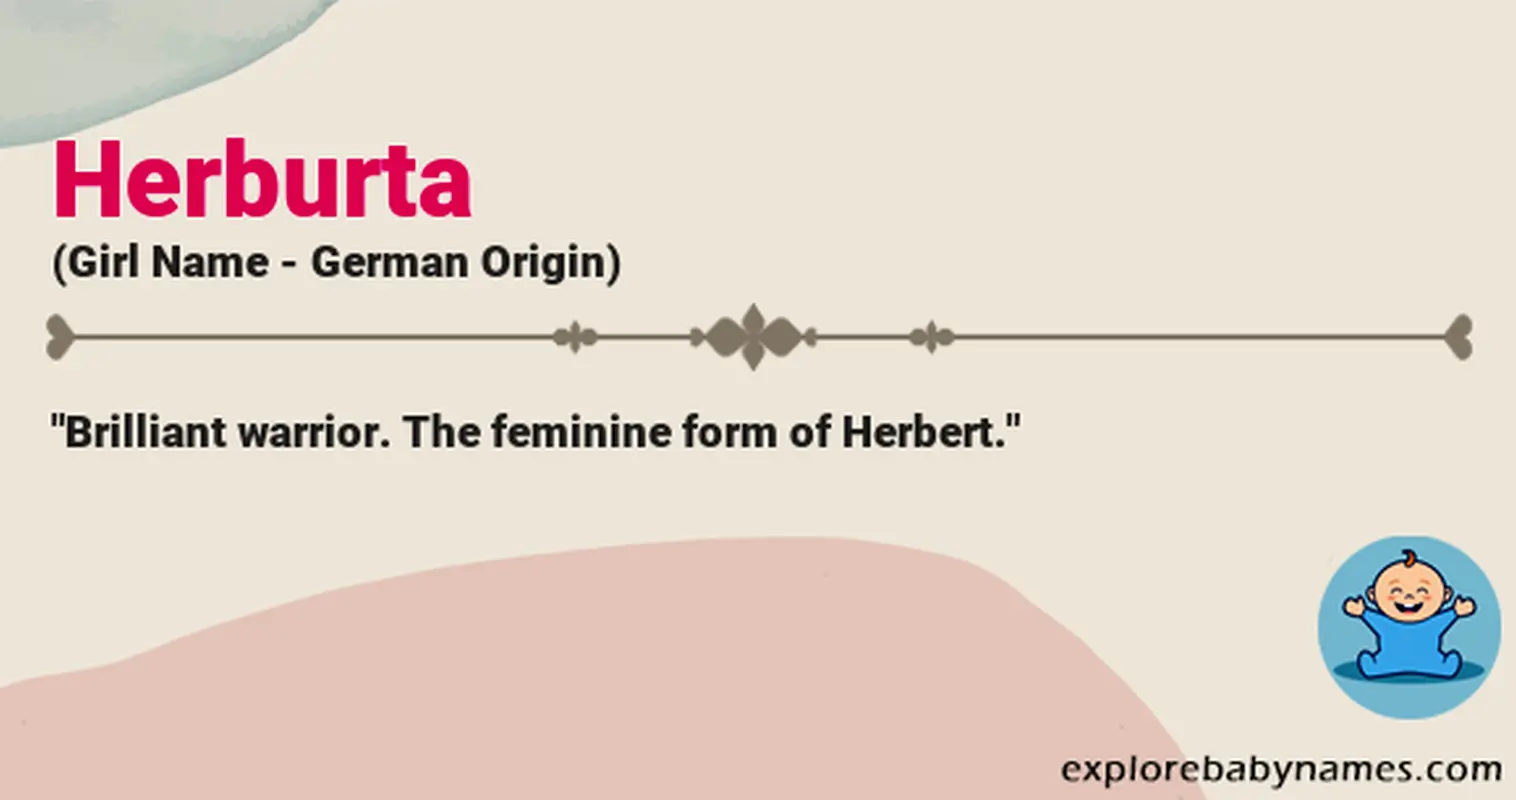 Meaning of Herburta